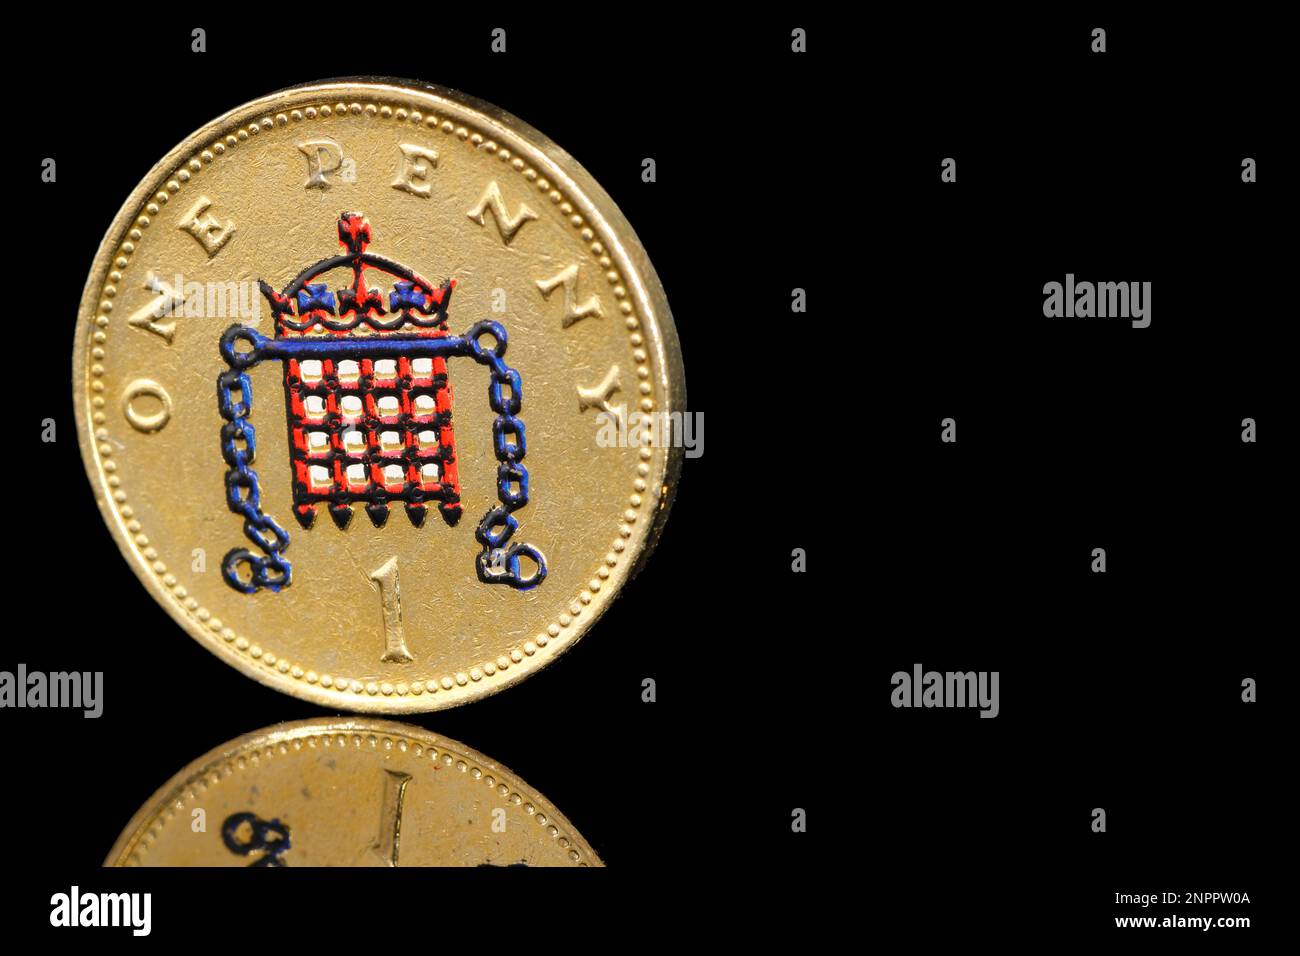 Une pièce d'un penny colorée au royaume-uni présente un portcullis couronné avec des chaînes Banque D'Images